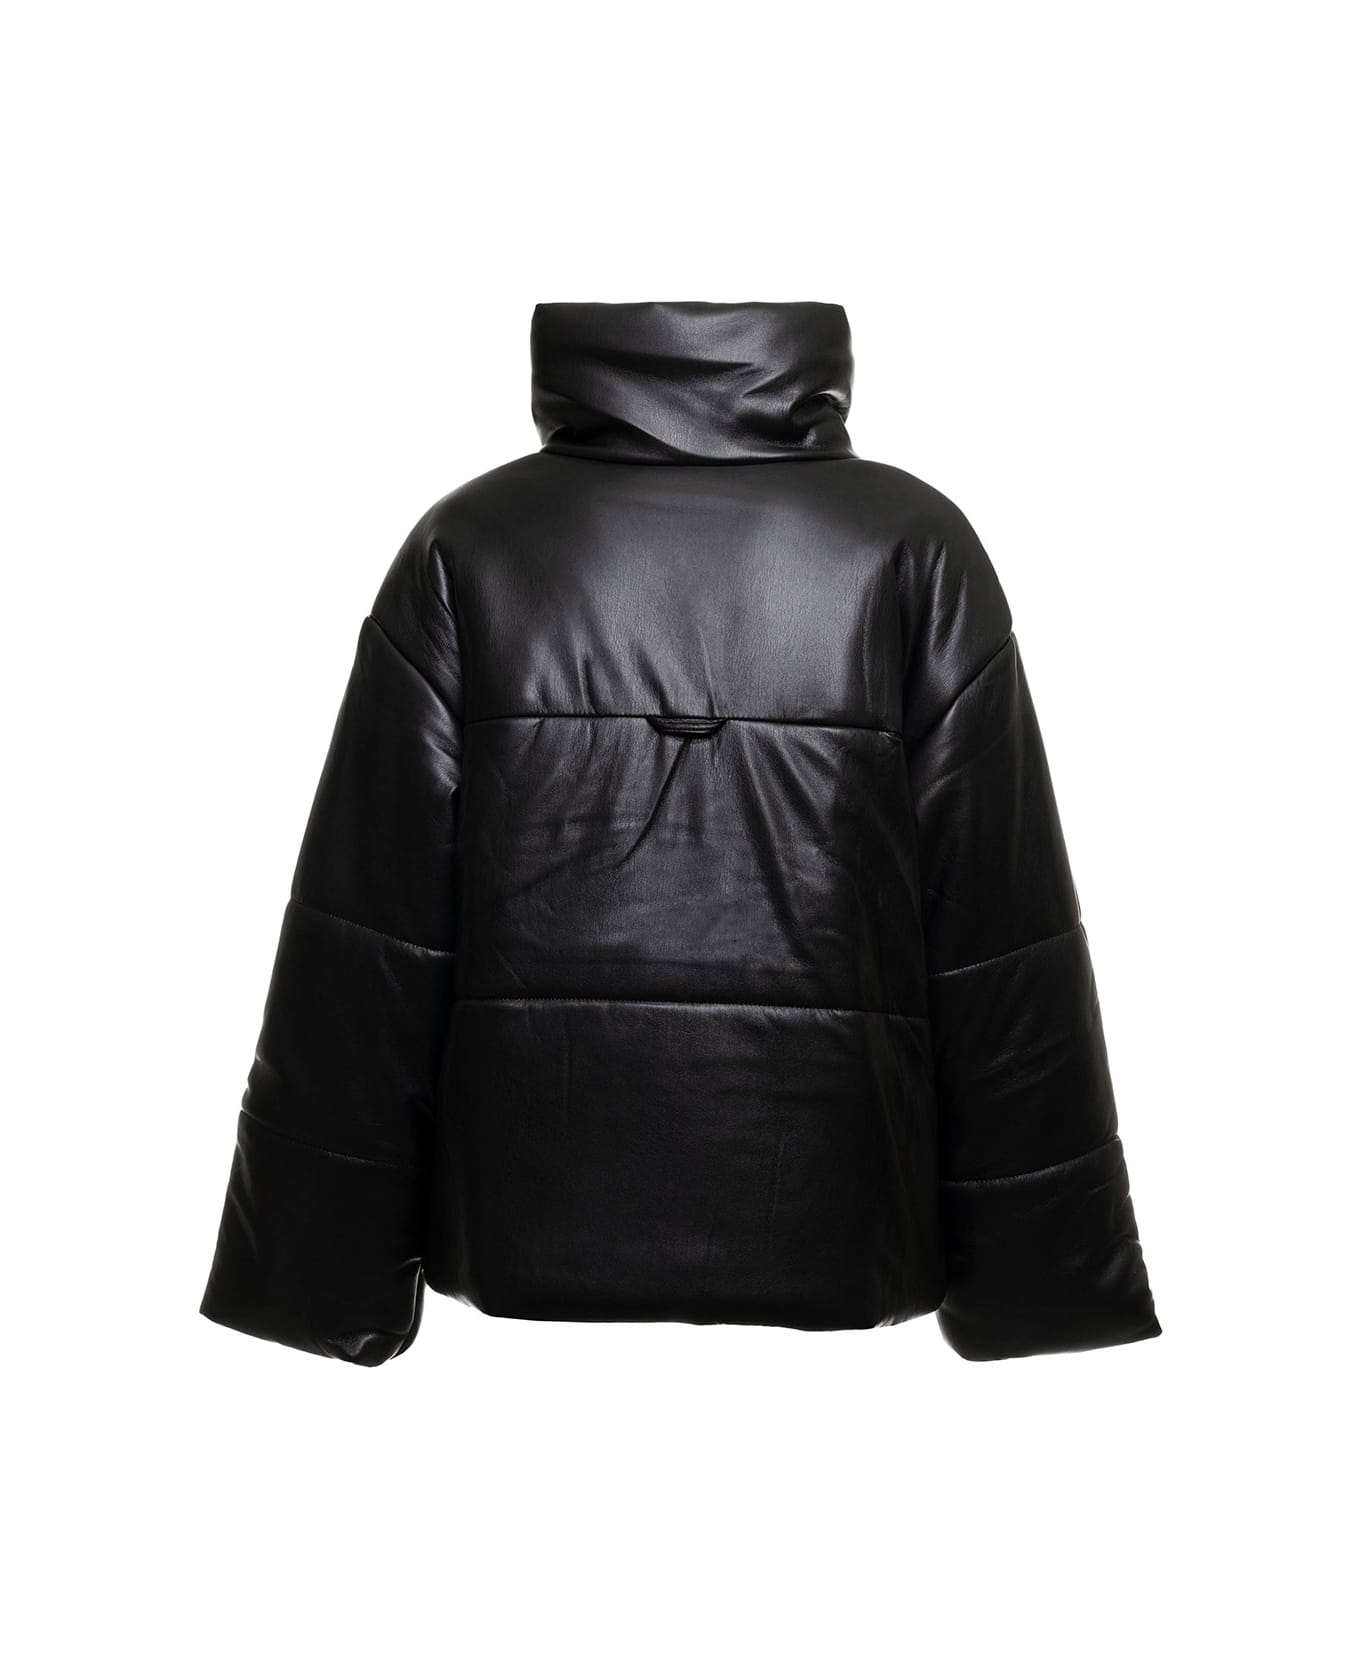 Nanushka Black Vegan Leather Quilted Jacket Nanuskha Woman - Black